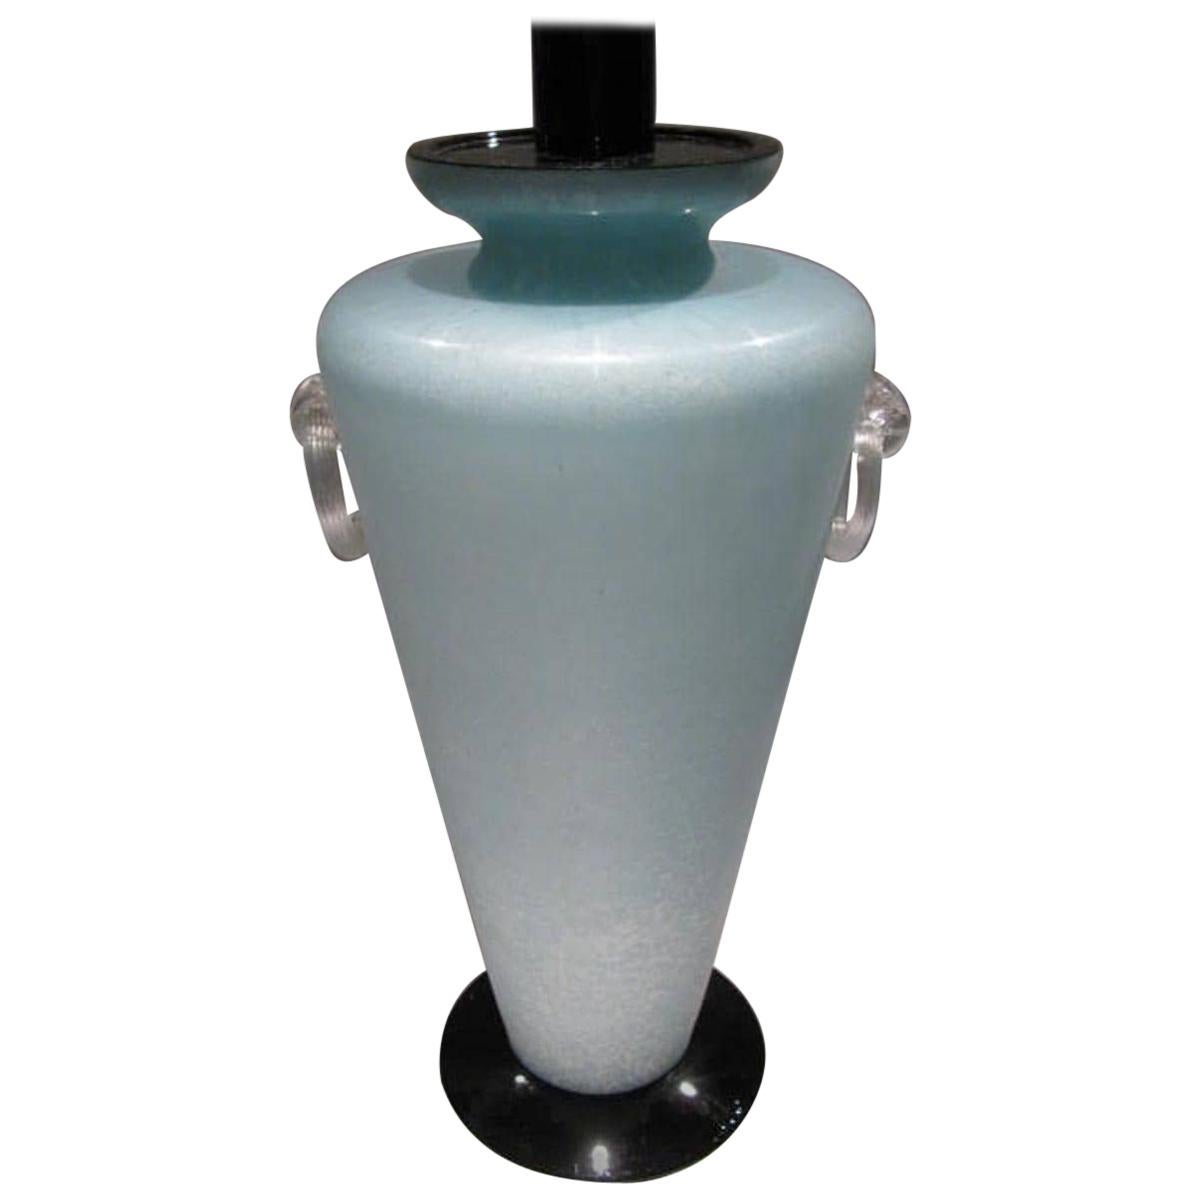 Eine aquamaringrüne Glasvase in Scavo-Technik, montiert als runde Tischlampe, hergestellt in Murano, in der Nähe von Venedig, Italien, ca. 1980er Jahre.
Das mit Scavo veredelte Glas, mundgeblasen in einem schönen aquamaringrünen Ton und schwarzen